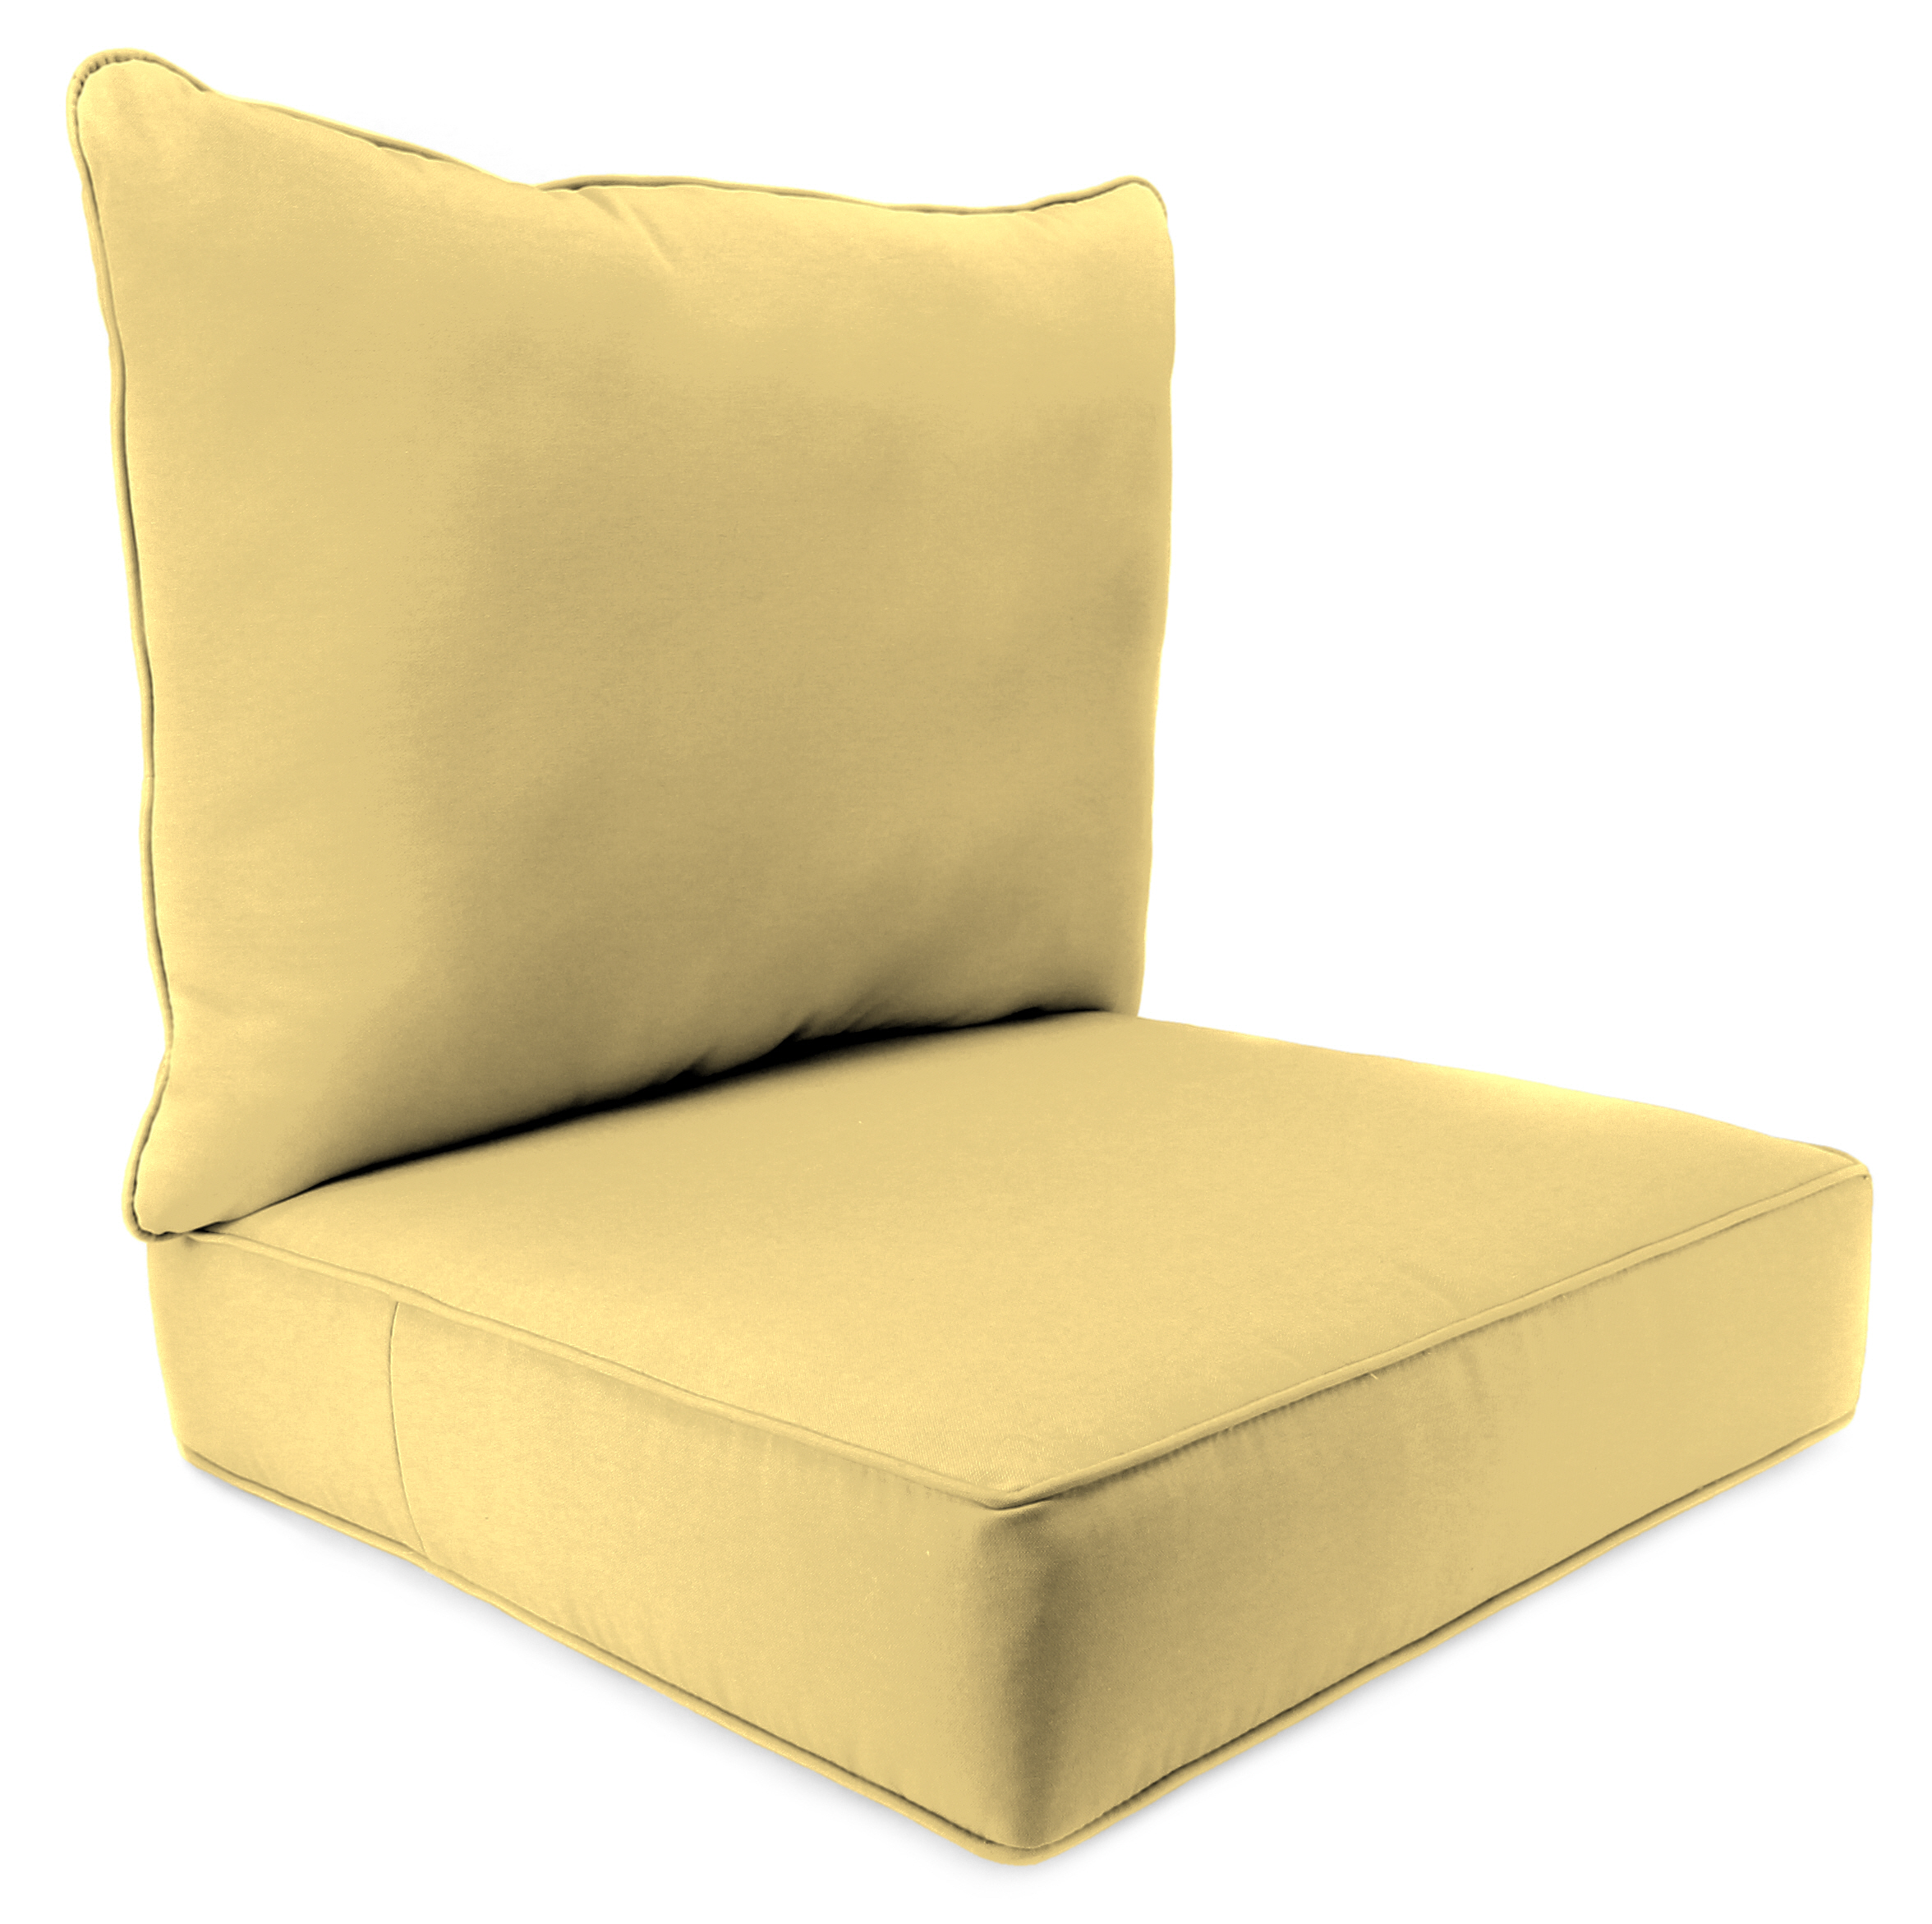 2 Piece Patio Deep Seat Patio Chair Cushion in Canvas Wheat